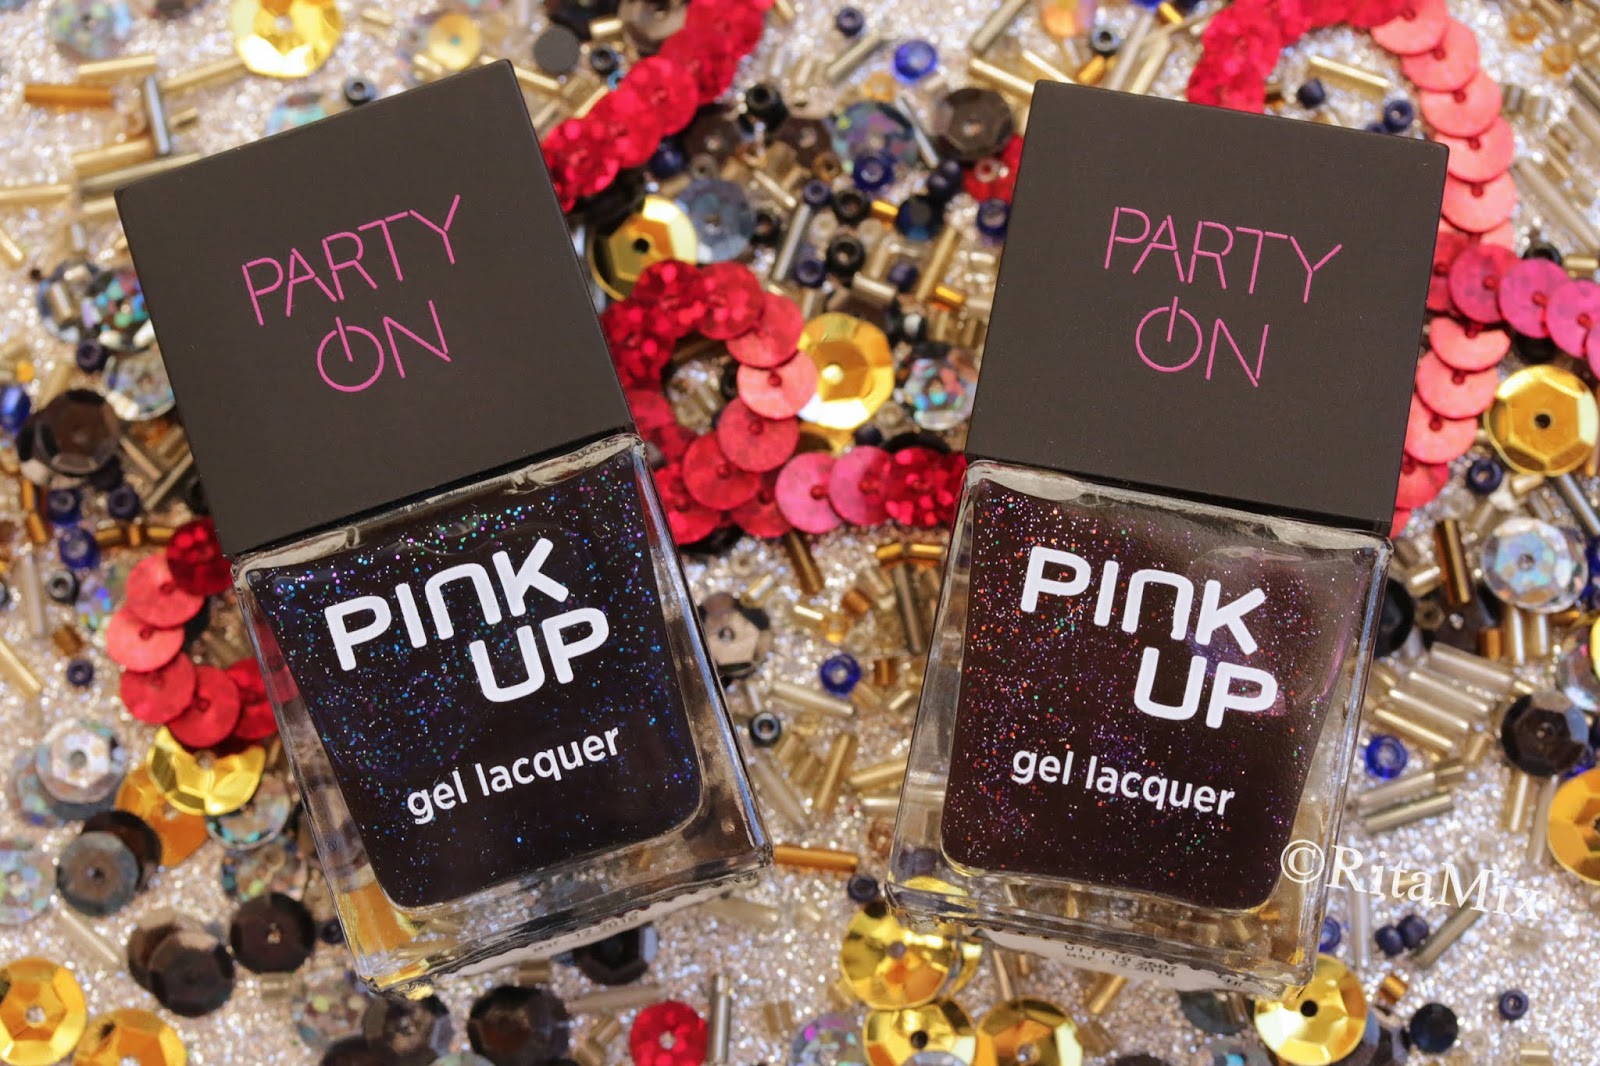 Party collection. Pink up гель лаки. Under Party коллекция. Ми парти коллекция. Pink up Silk Road лак для ногтей свотчи обзор.